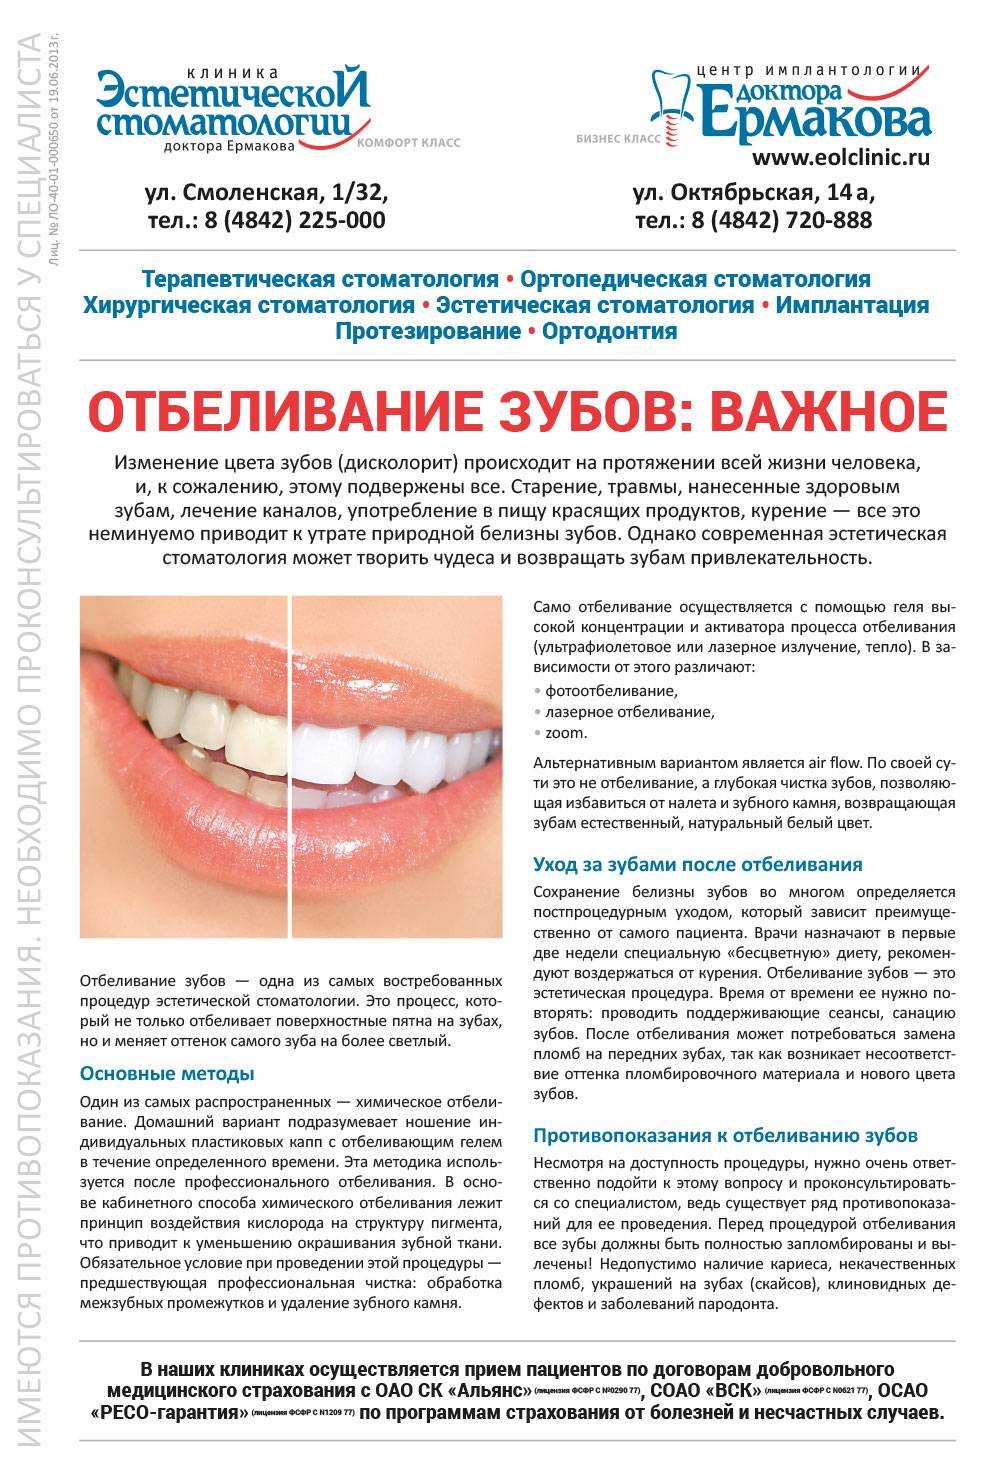 Проблемы при отбеливании зубов зубные щетки ассортимент